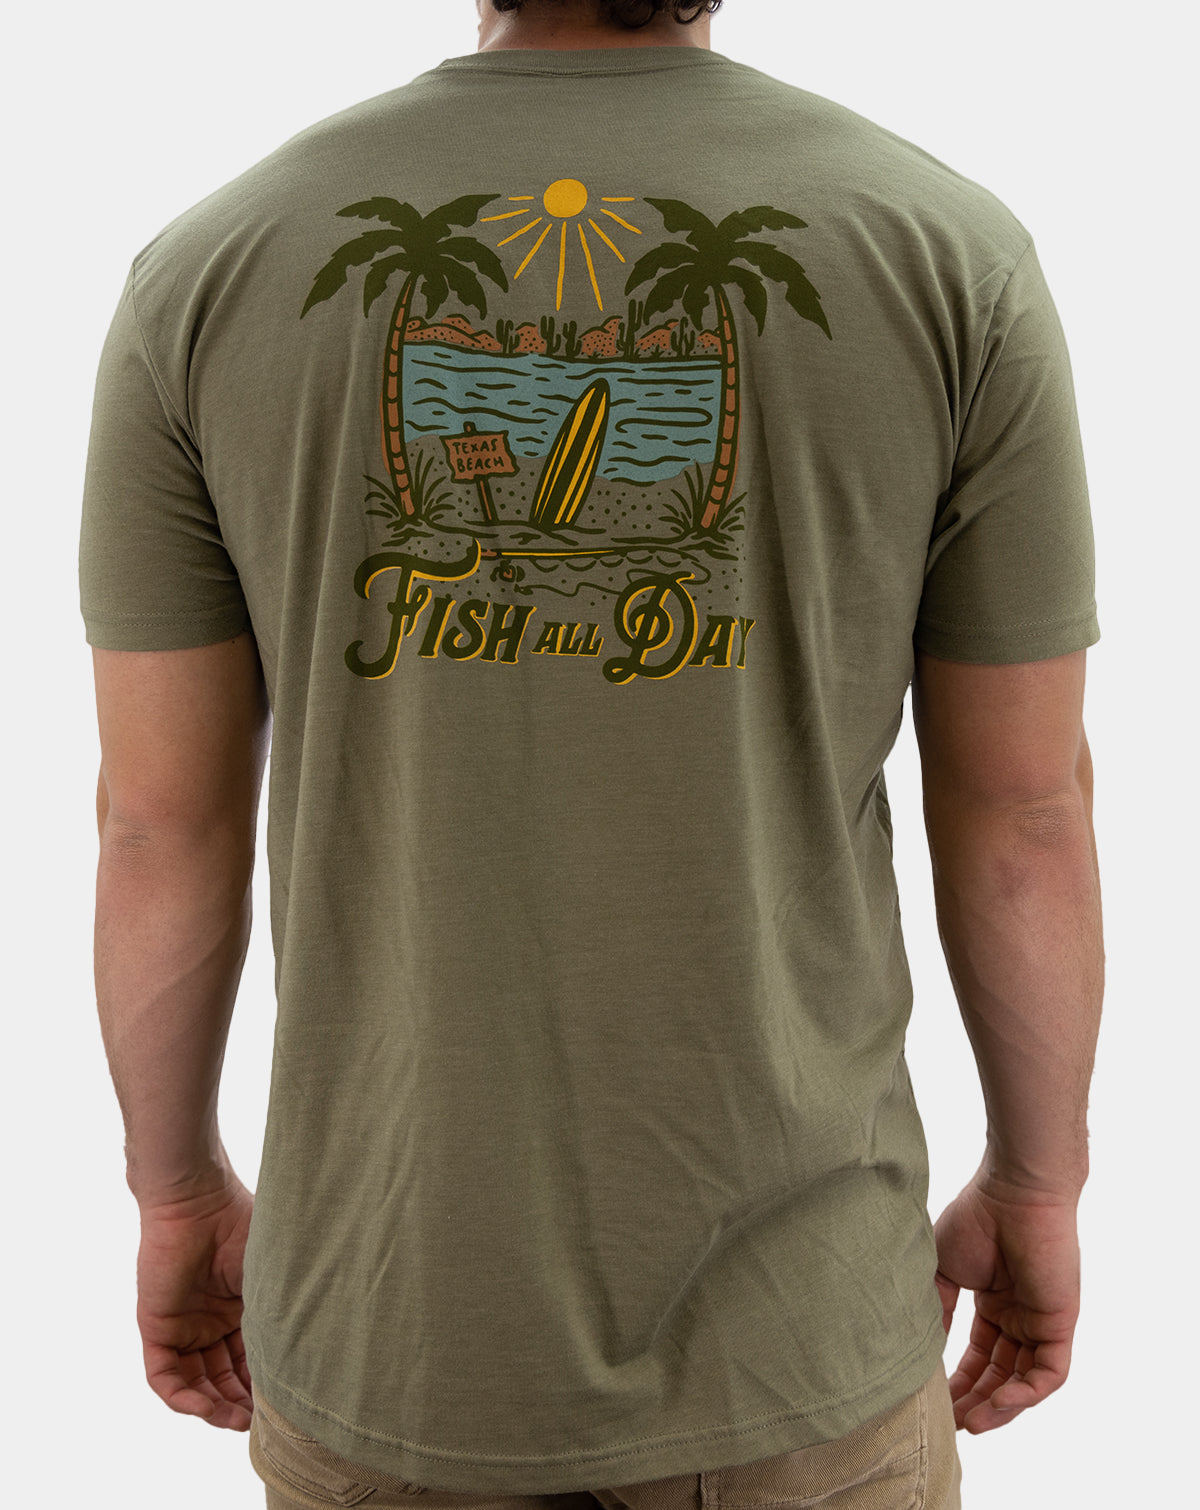 Mens Reel Cool Tio Fishing Shirt Funny Fish Vintage T-Shirt